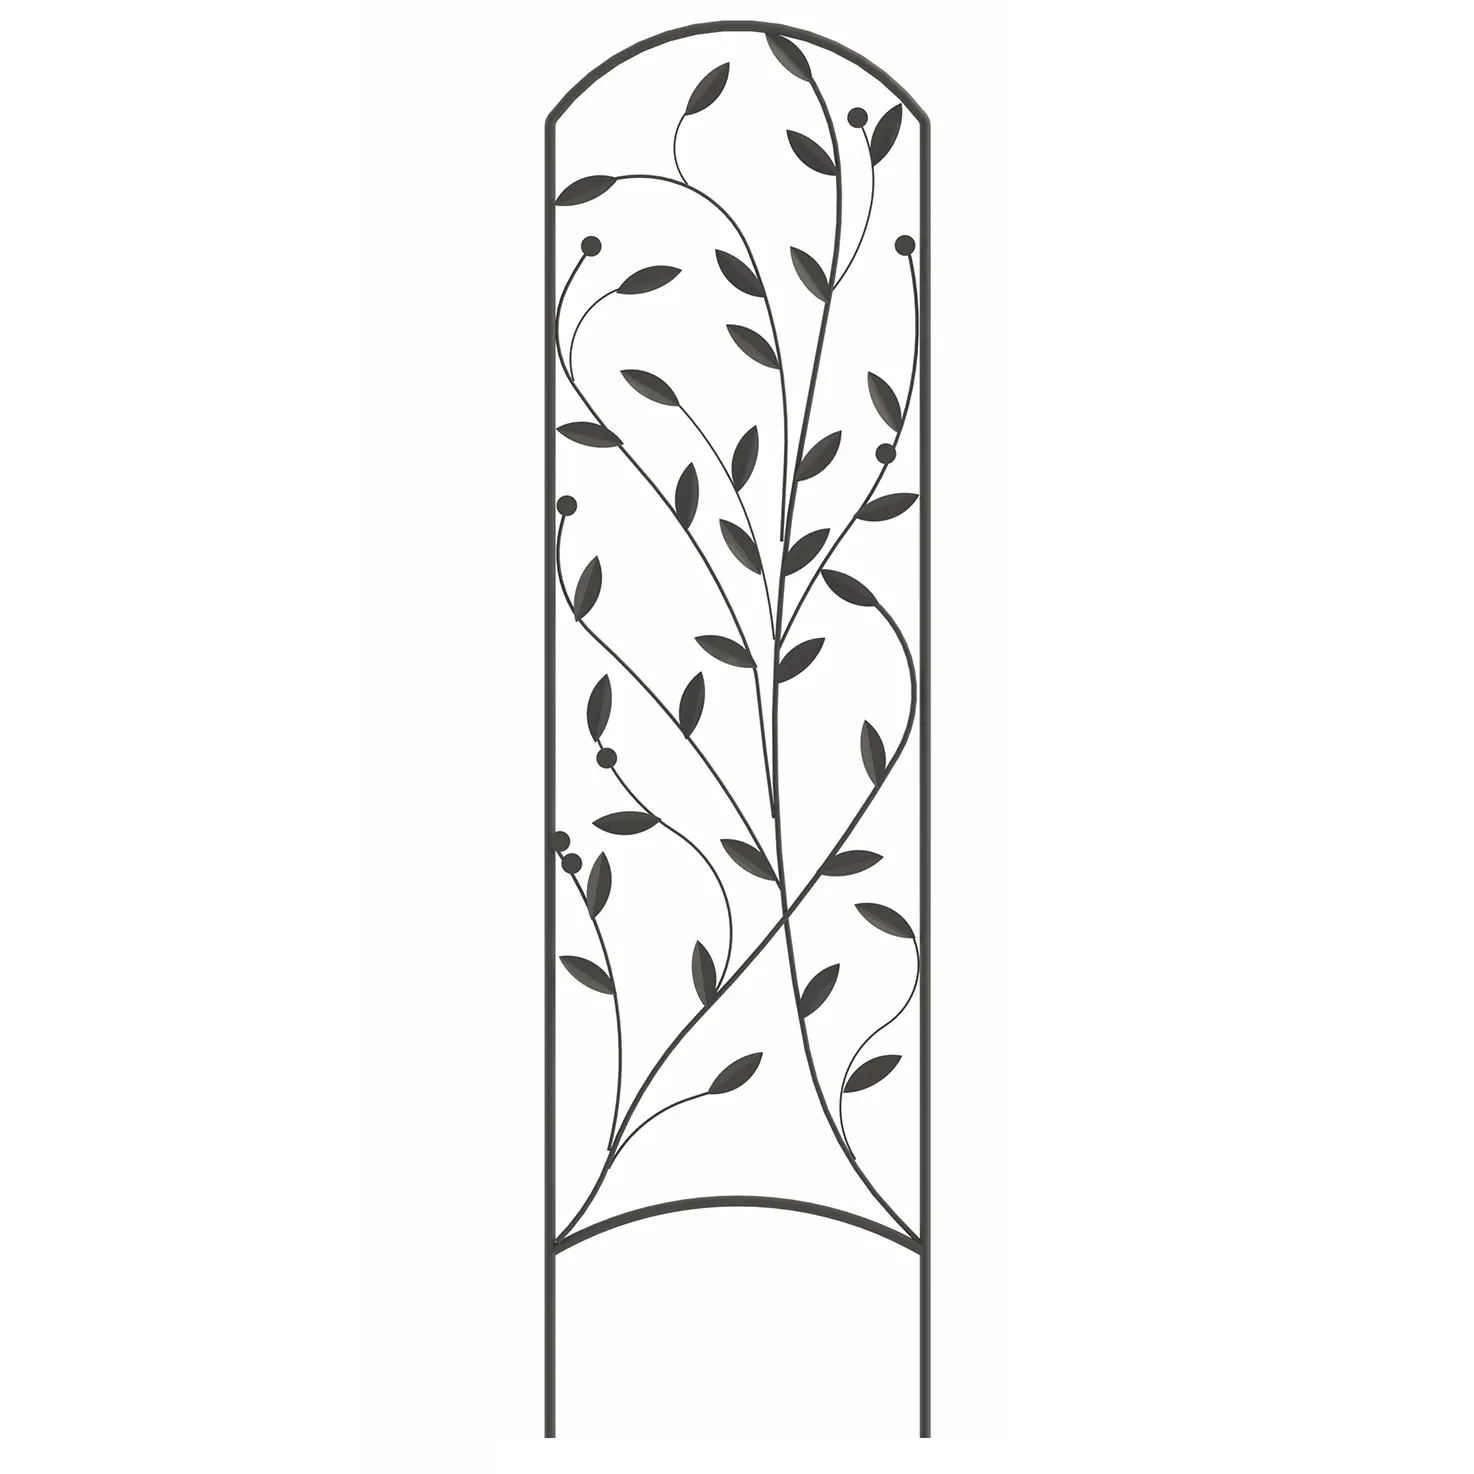 Treliça revestida plástica do aço do jardim home para a planta que cresce o jardim escalada do apoio